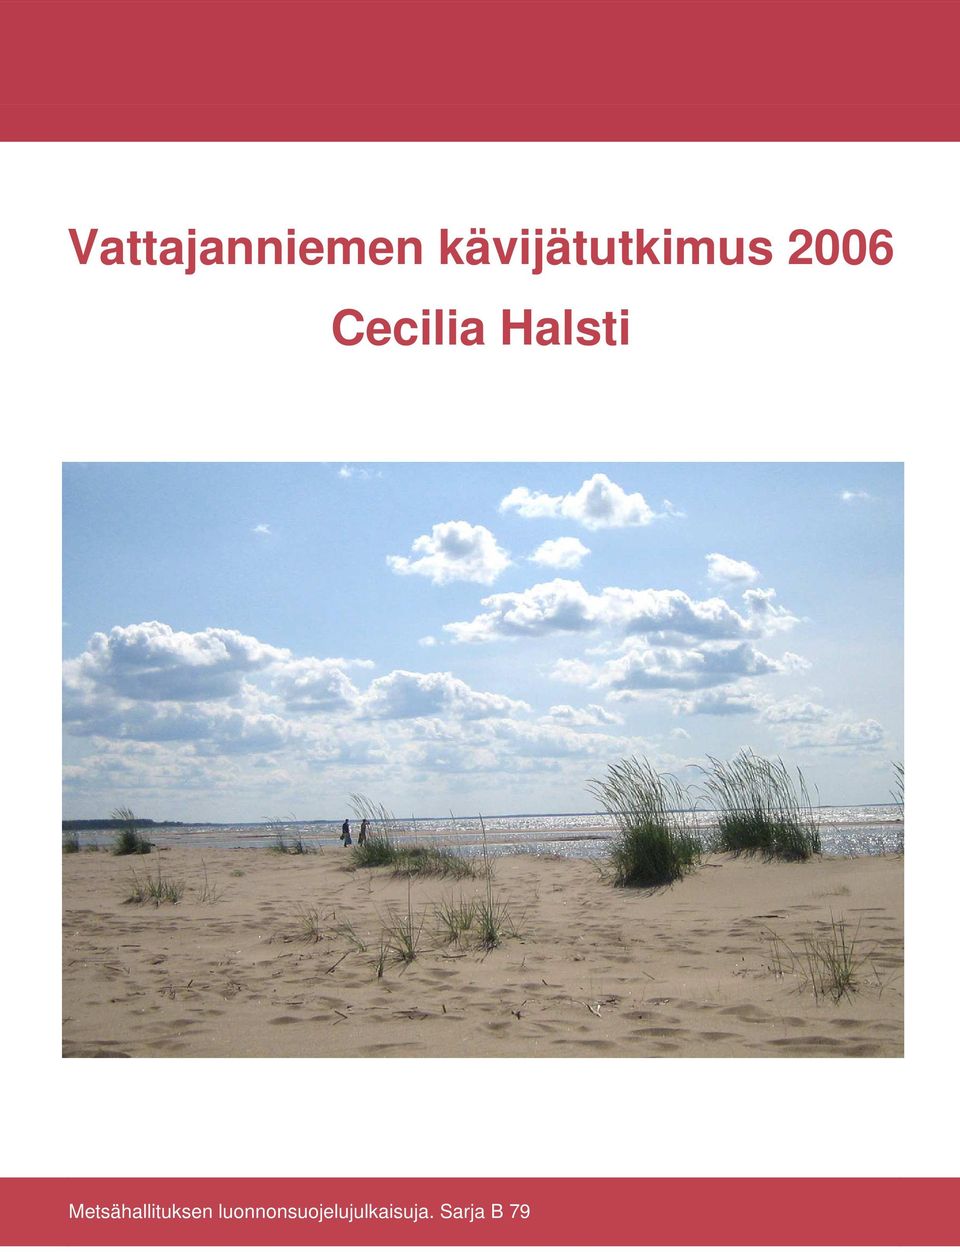 Cecilia Halsti